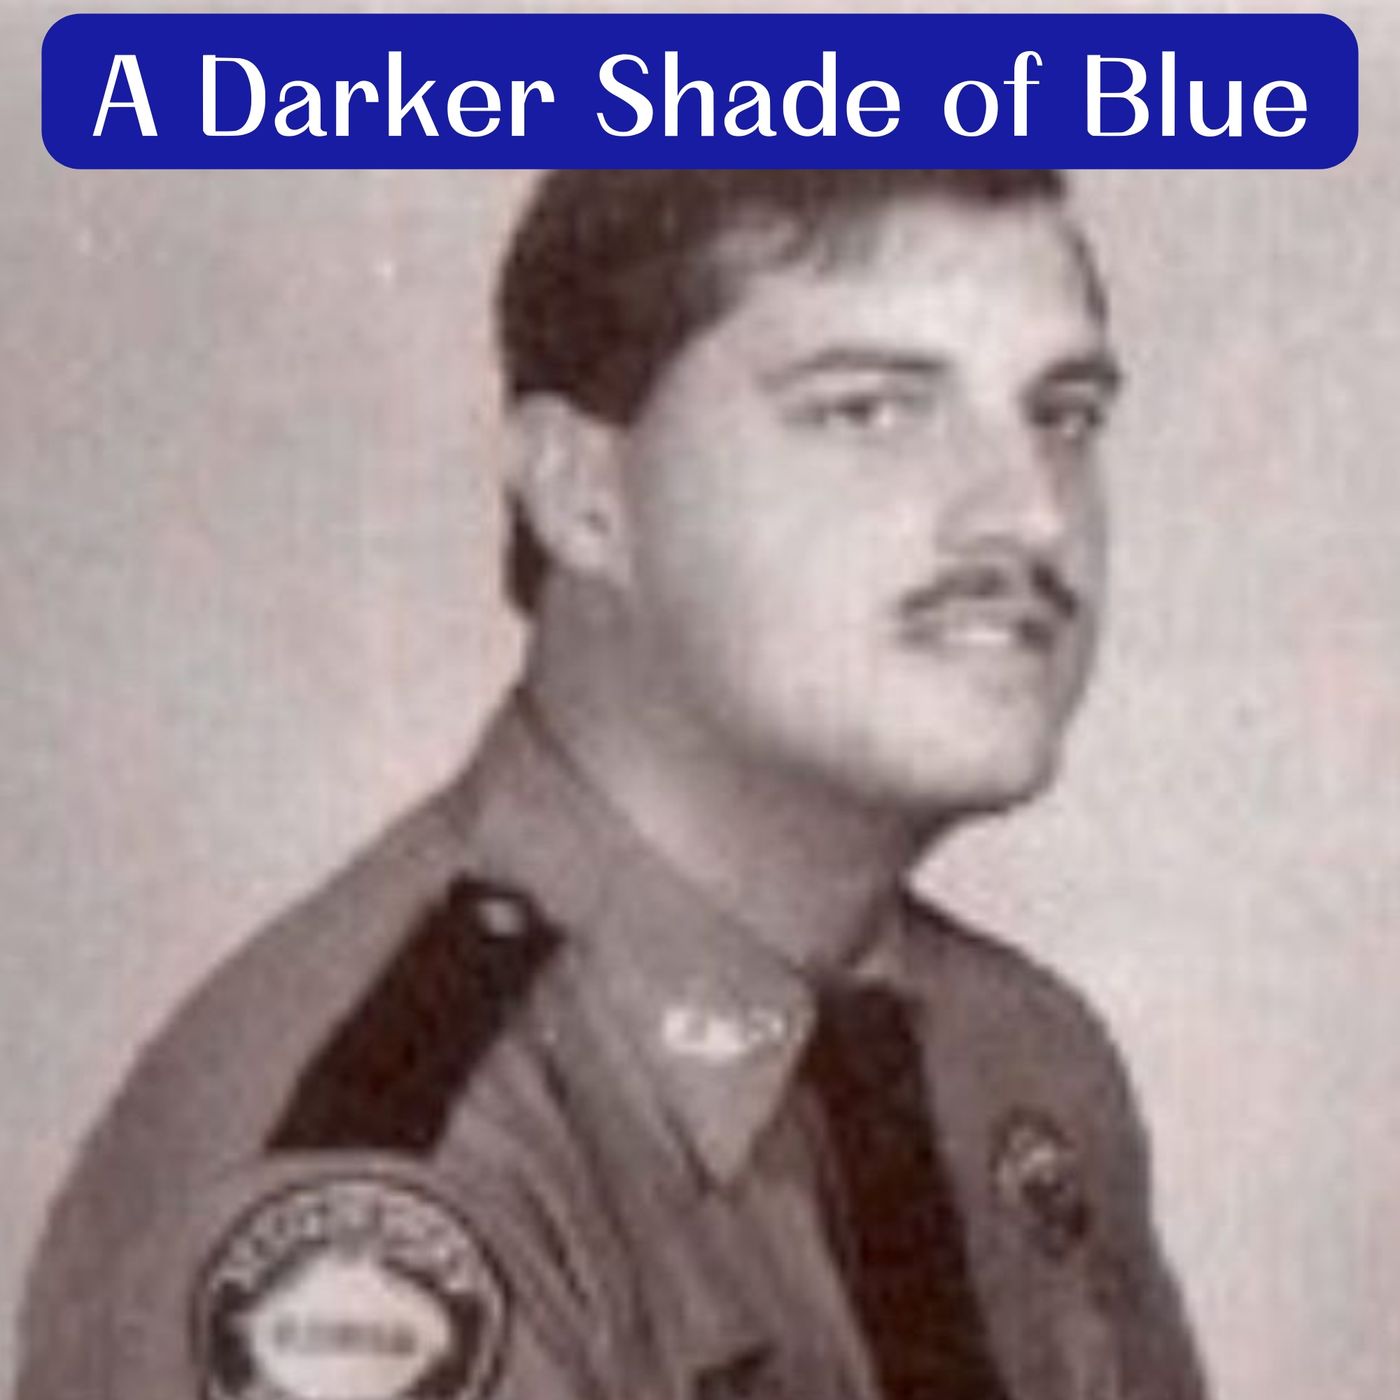 A Darker Shade of Blue: The Murder of Lorraine Hendricks